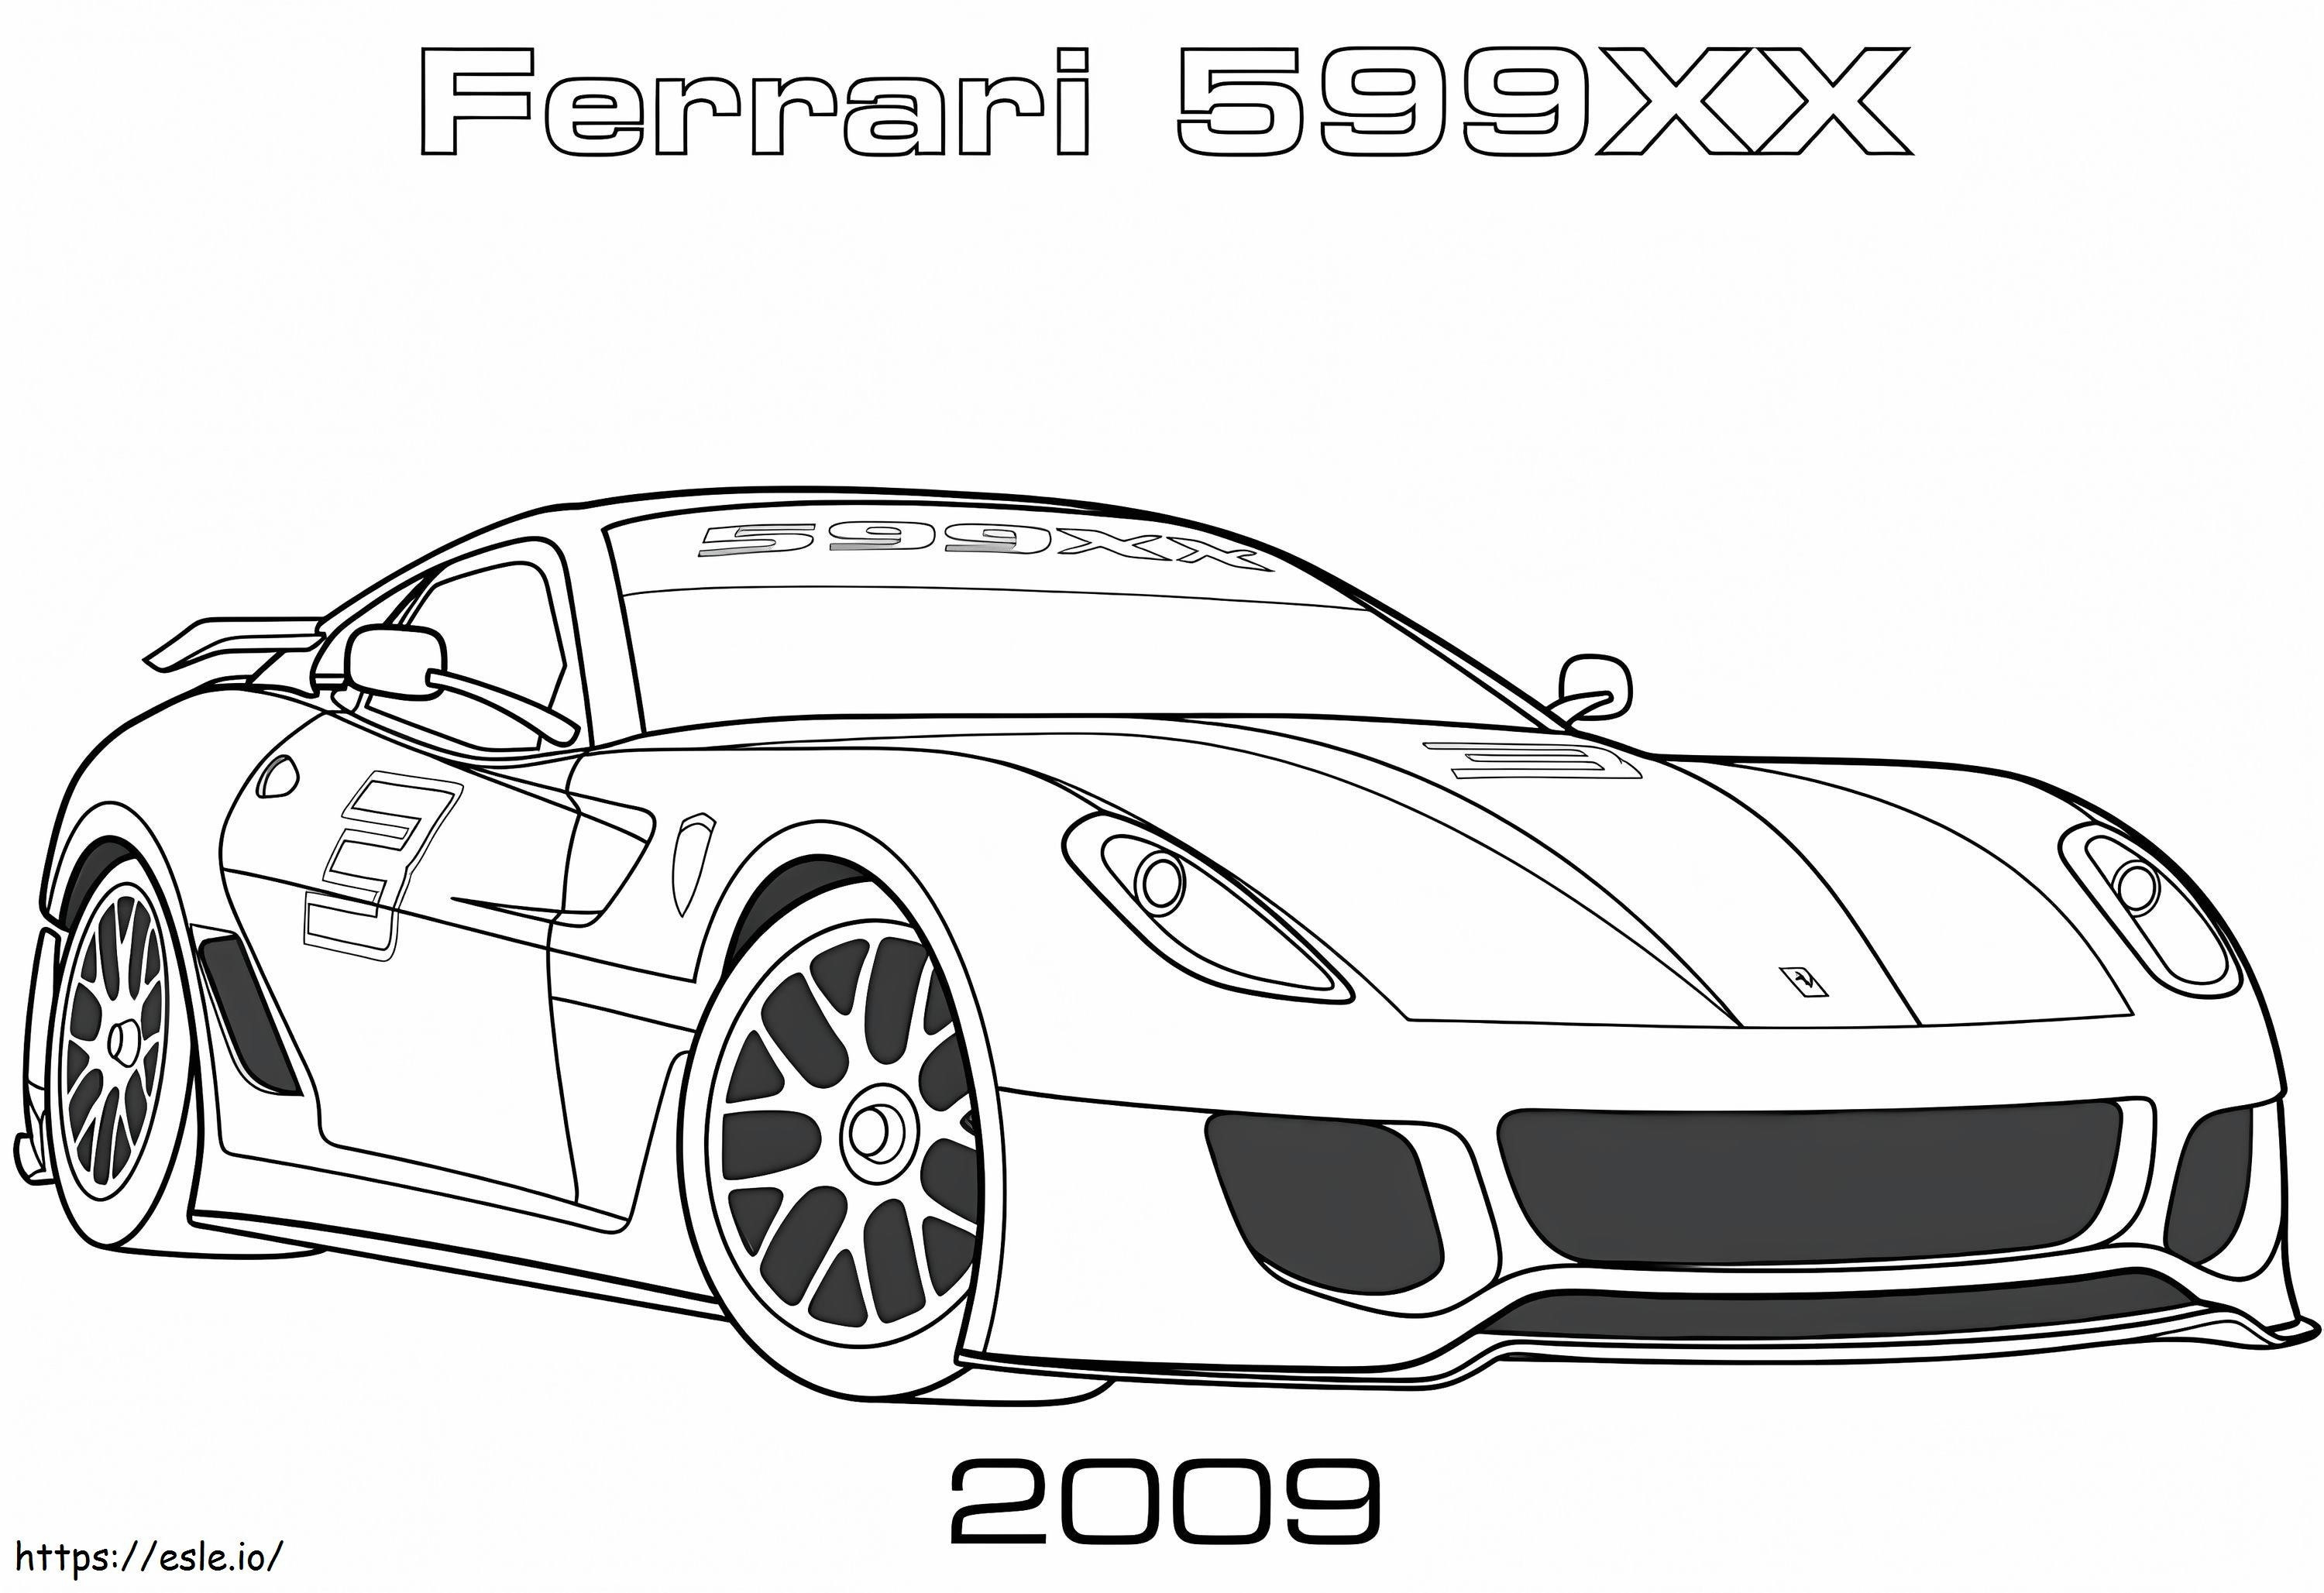  Ferrari 599XX 1024X702 kleurplaat kleurplaat